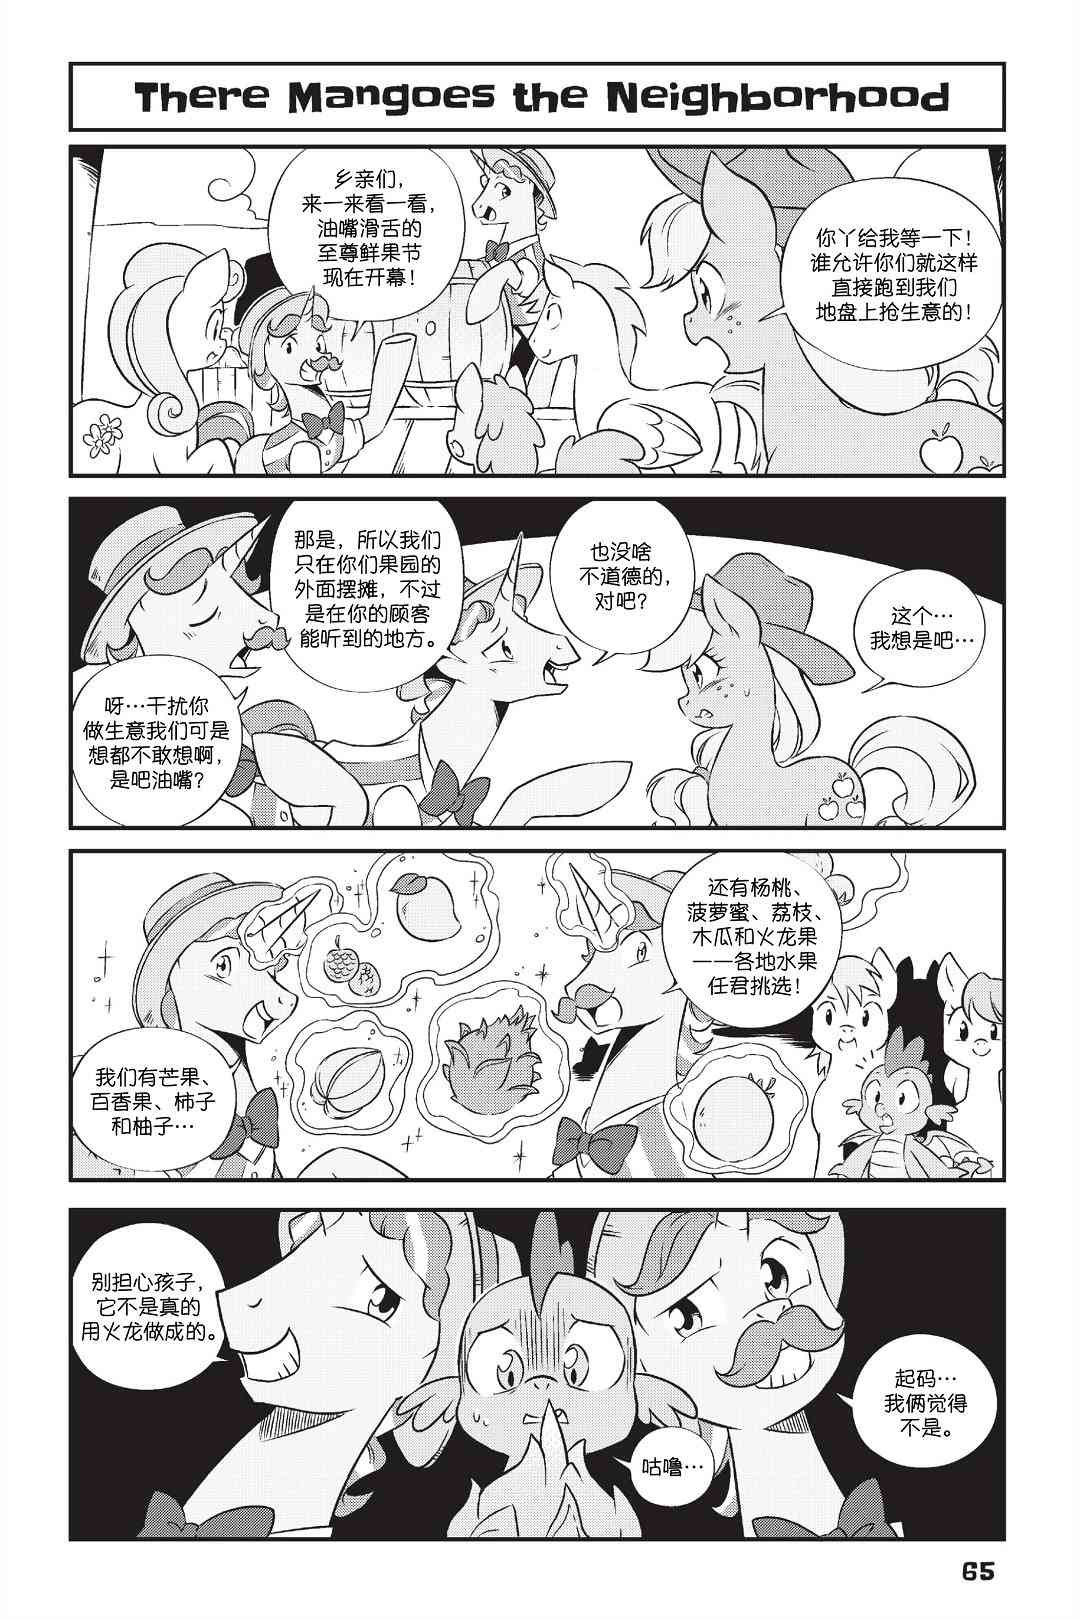 彩虹小馬G4：友情就是魔法 - 新日版漫畫第01部第05話 - 1